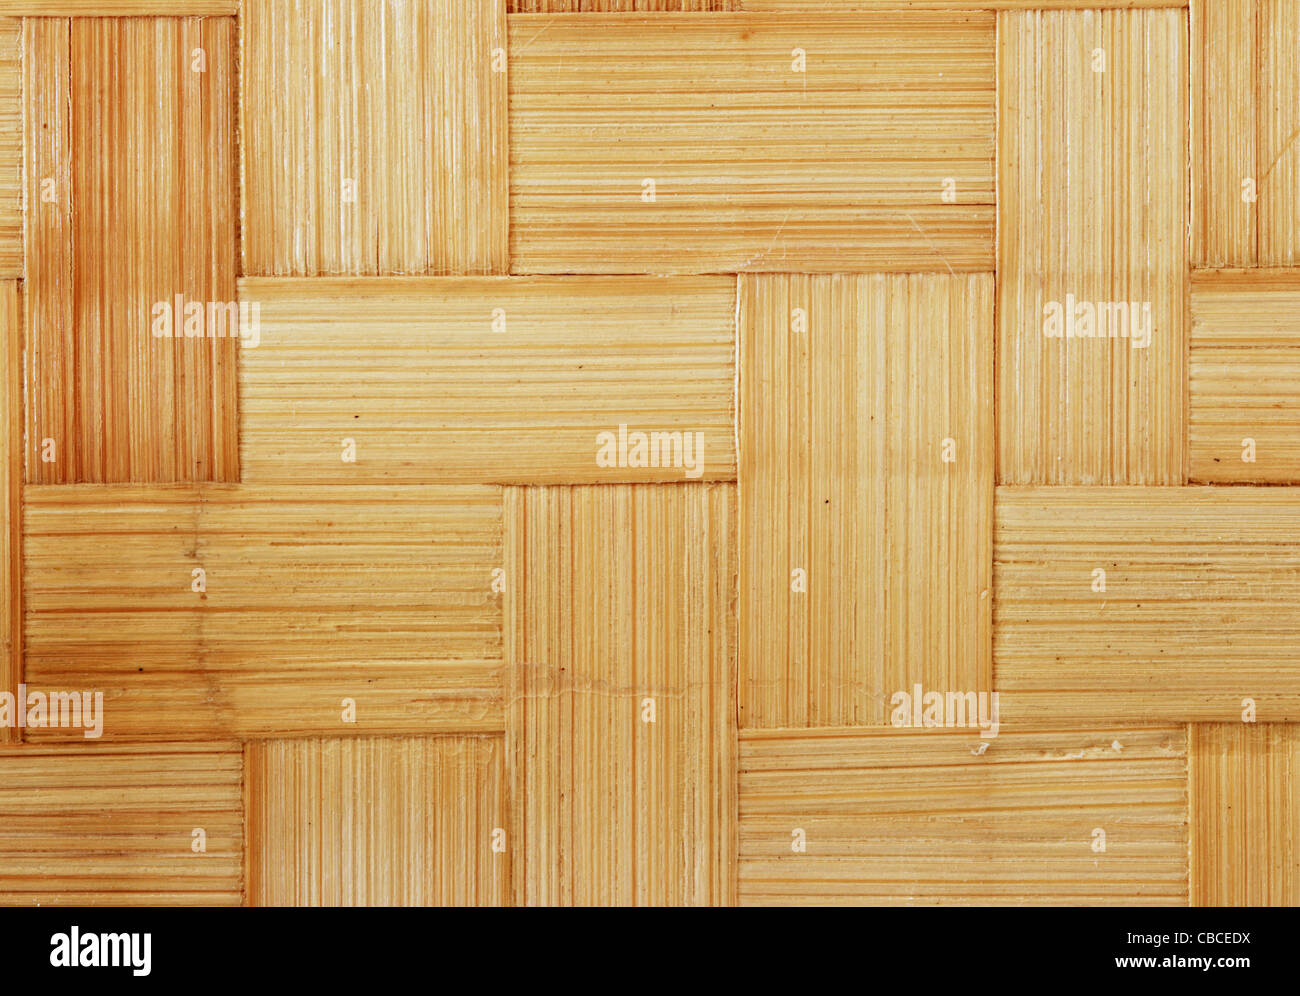 Les bandes de bambou tissé plat pour la texture d'arrière-plan Banque D'Images